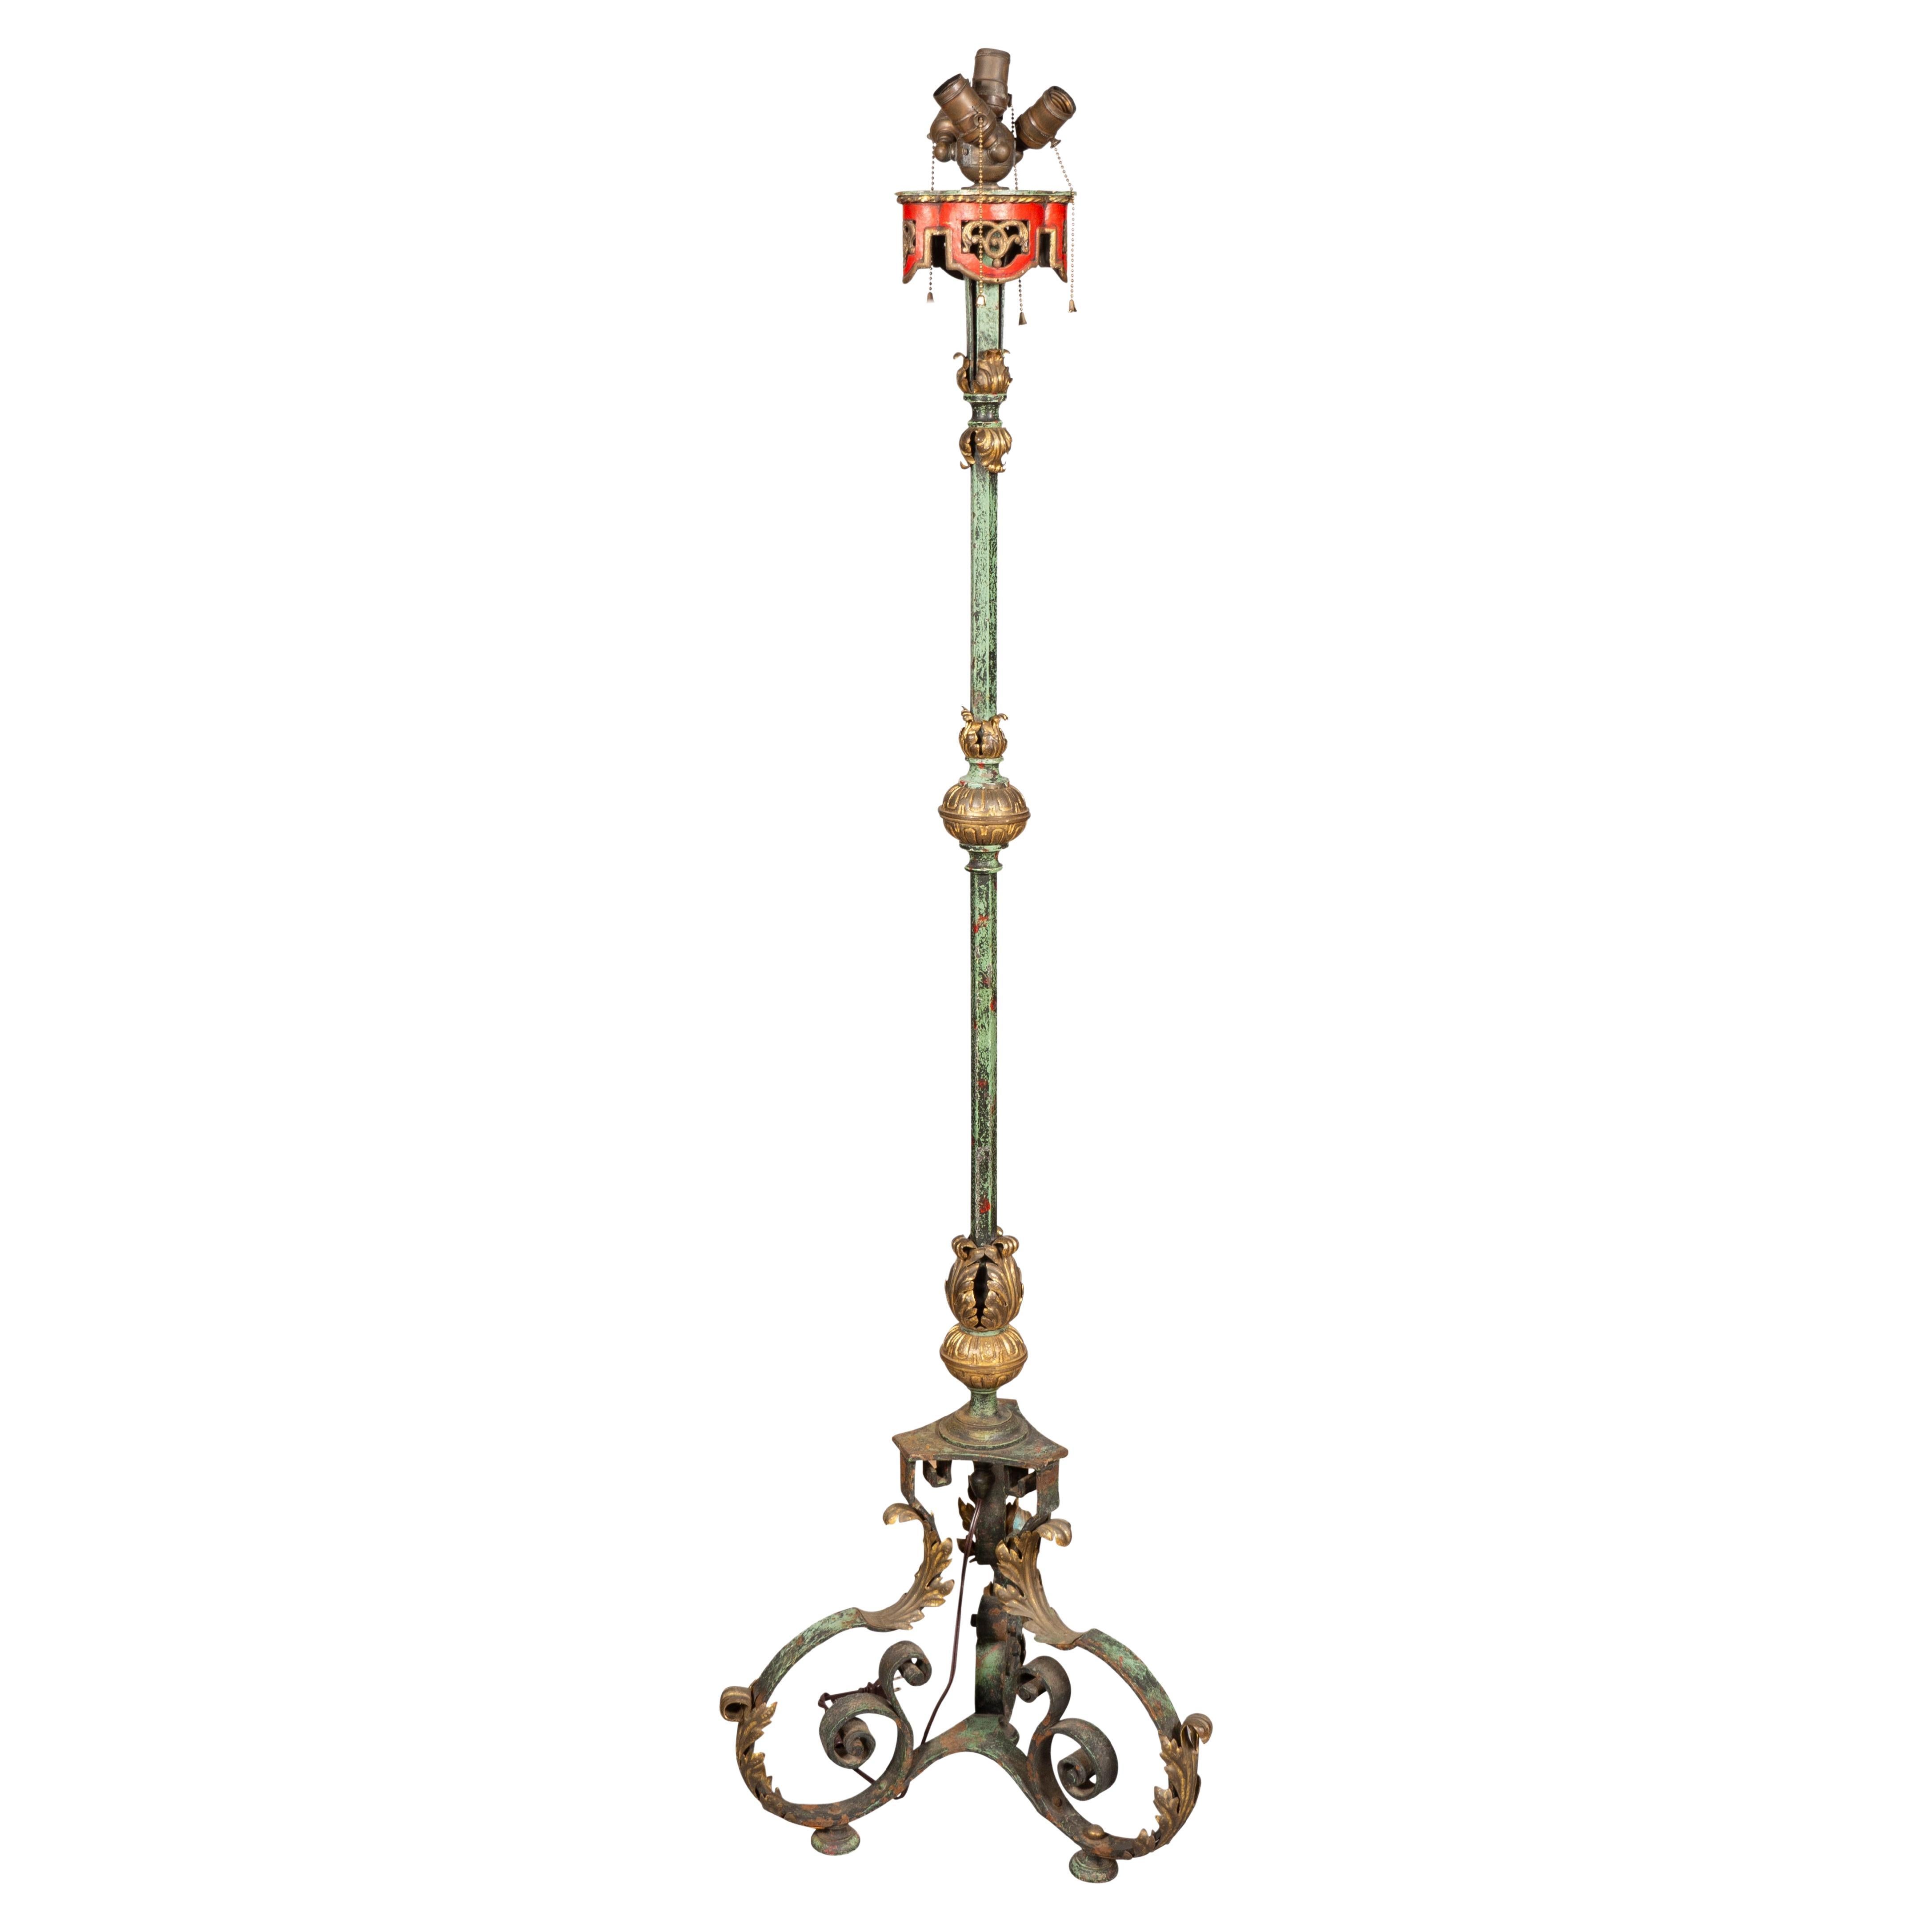 Renaissance Revival Stehlampe aus Messing und Eisen